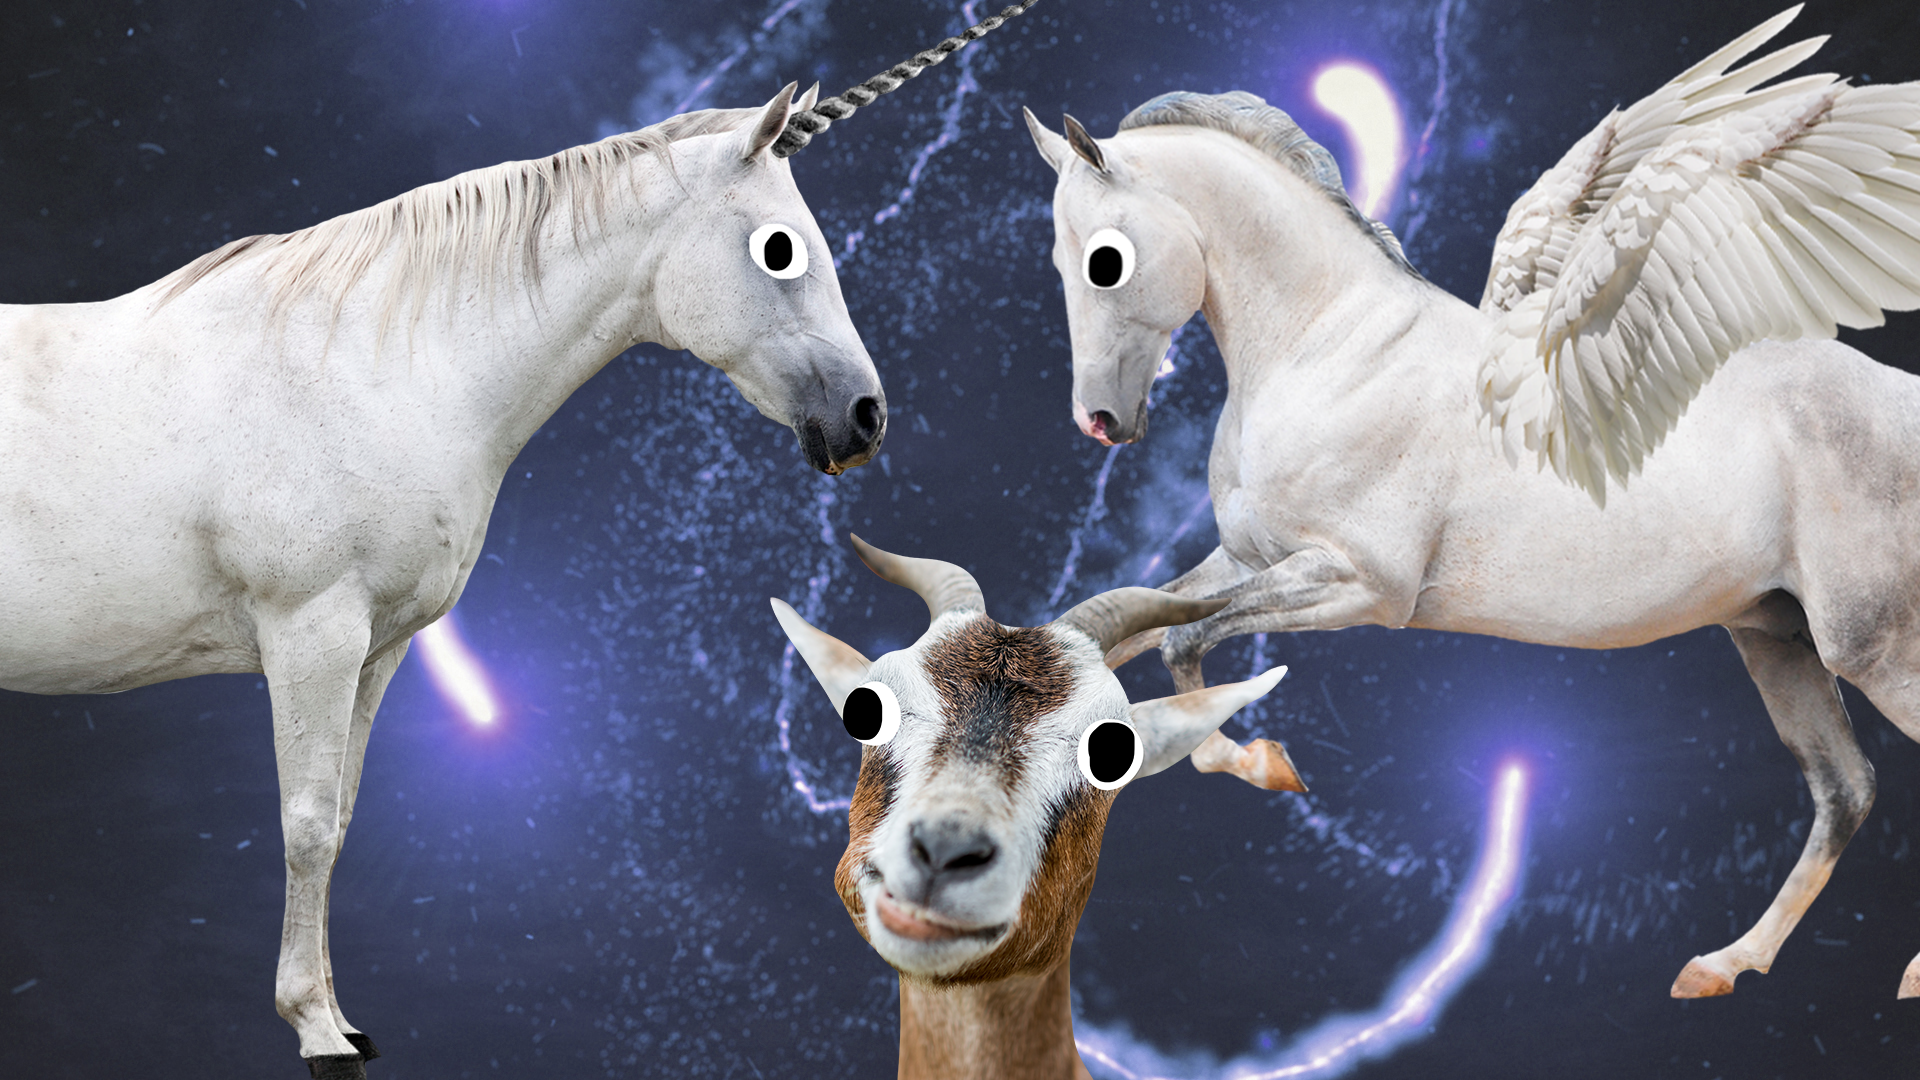 Unicorn, Pegasus and goat on magic background